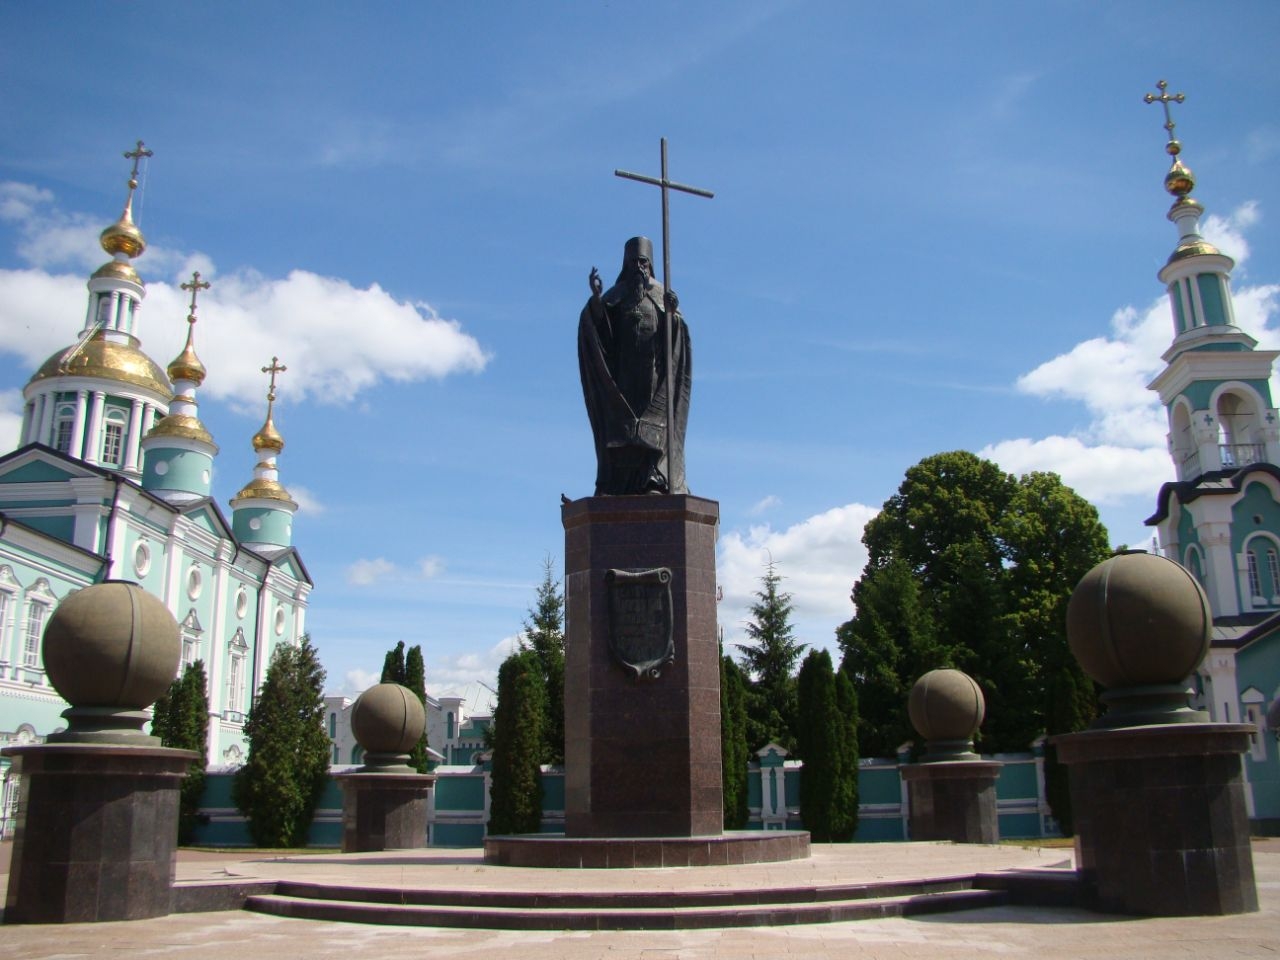 Спасо-Преображенский кафедральный собор Тамбов, Россия